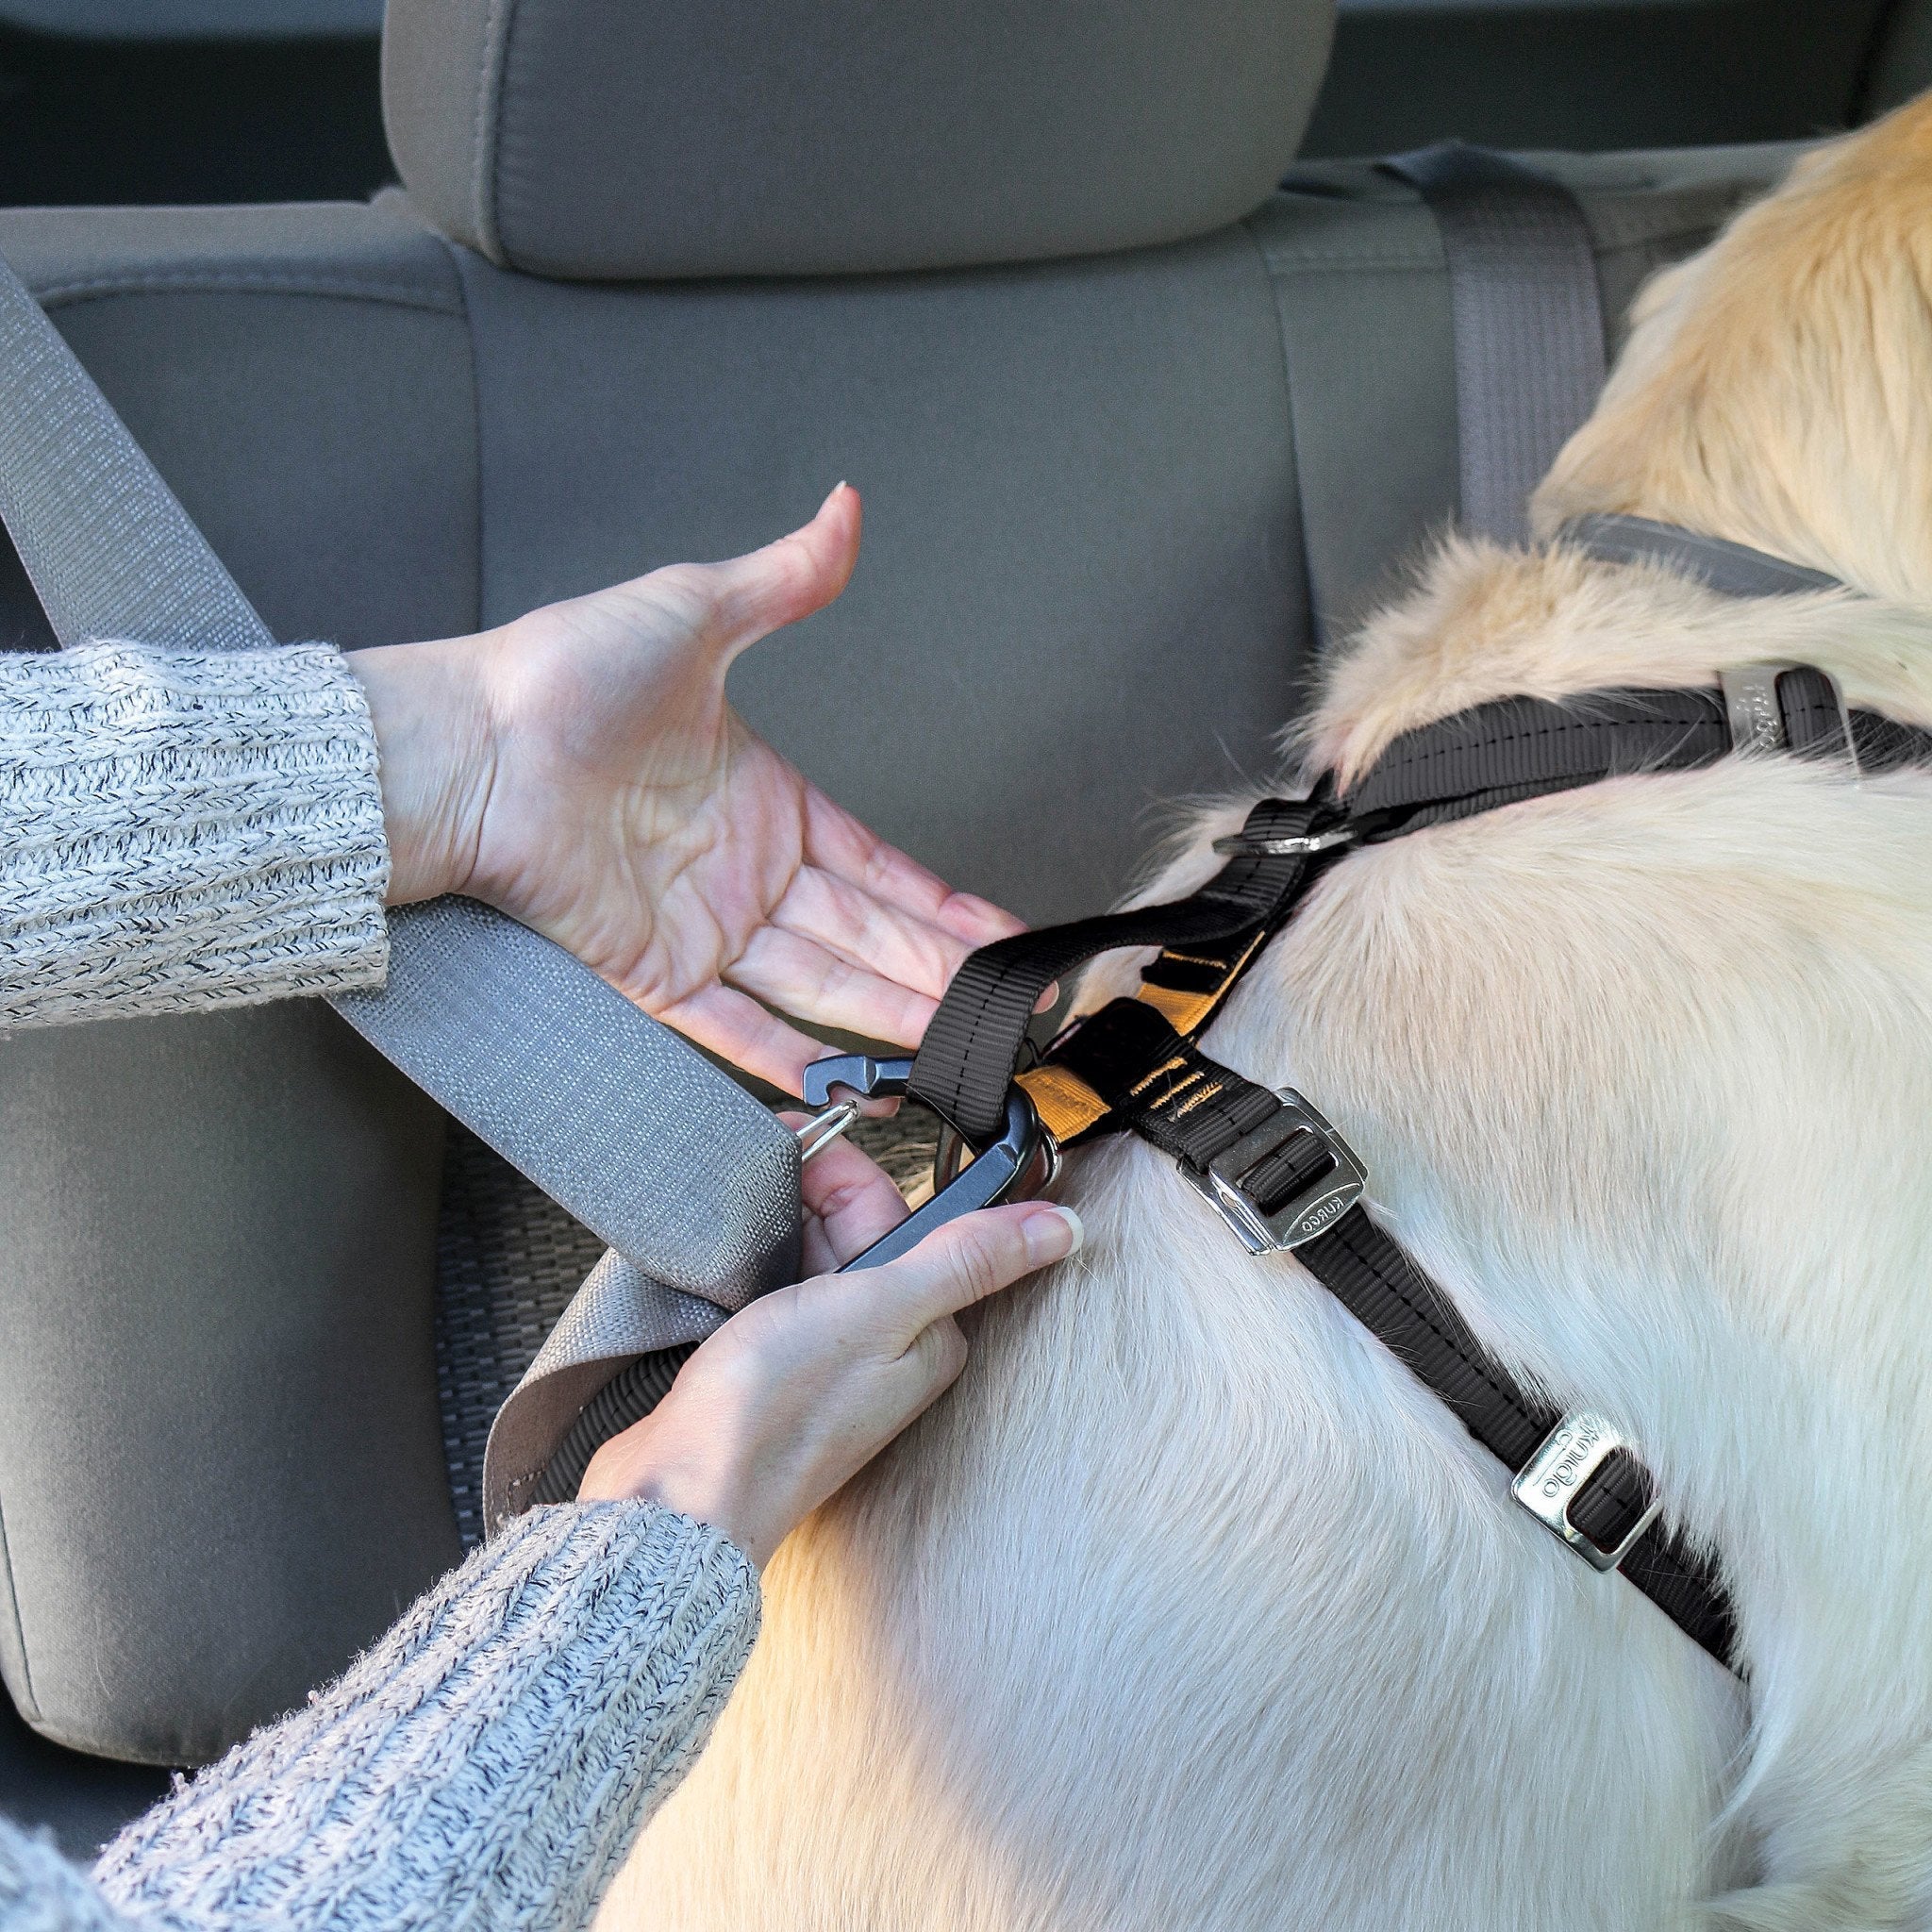 Kurgo Enhanced Strength Tru-Fit Dog Car Harness